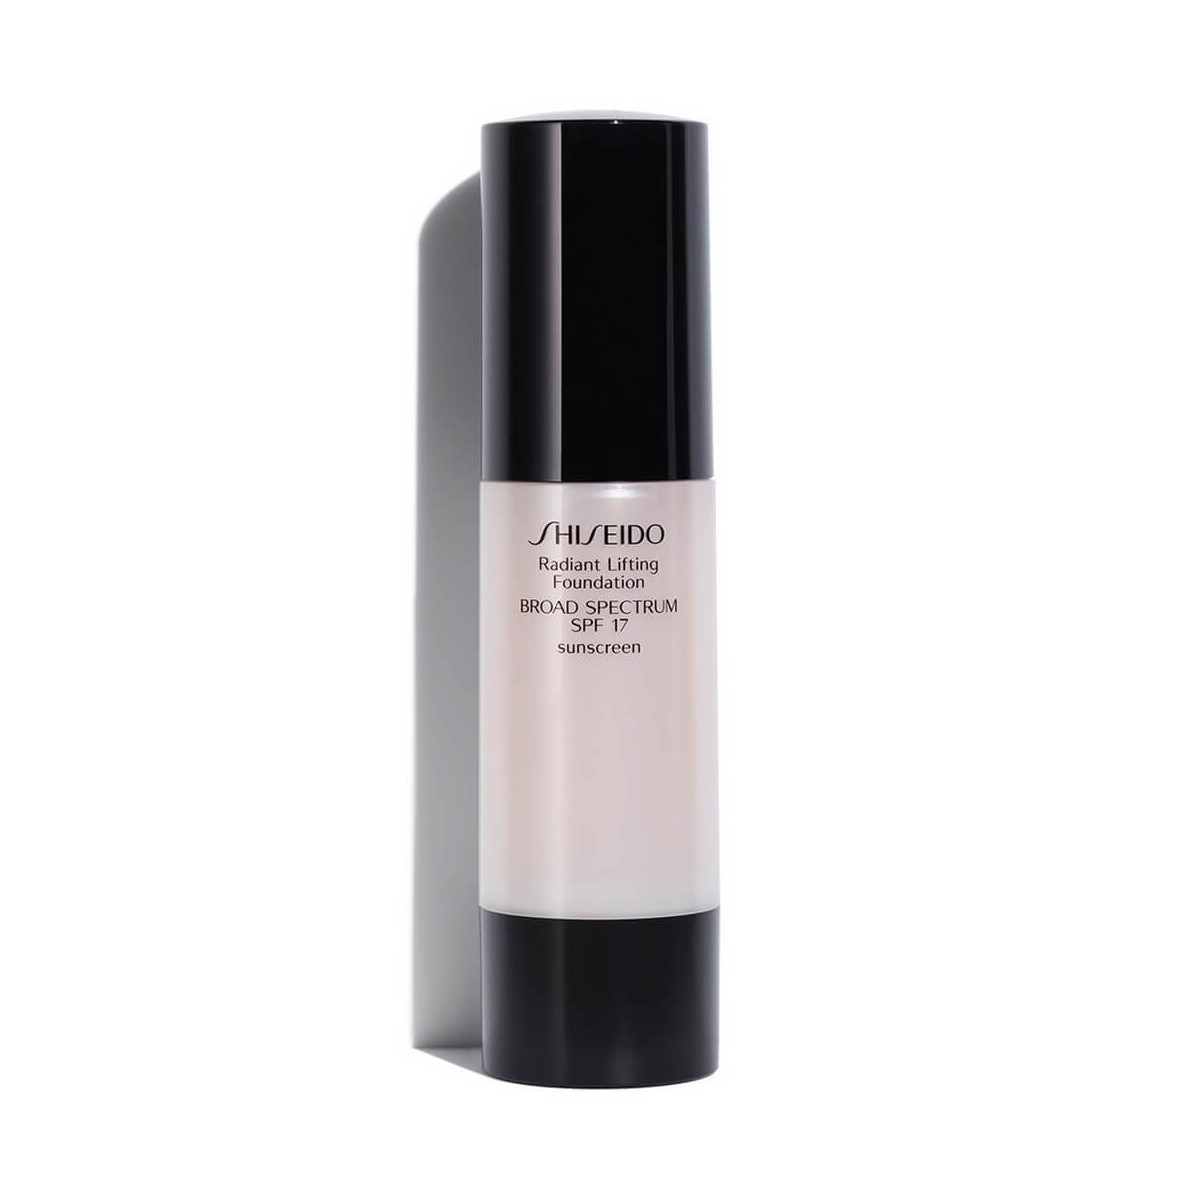 Тональный крем Shiseido Radiant Lifting Foundation. Радиант тональный крем. Shiseido radiant